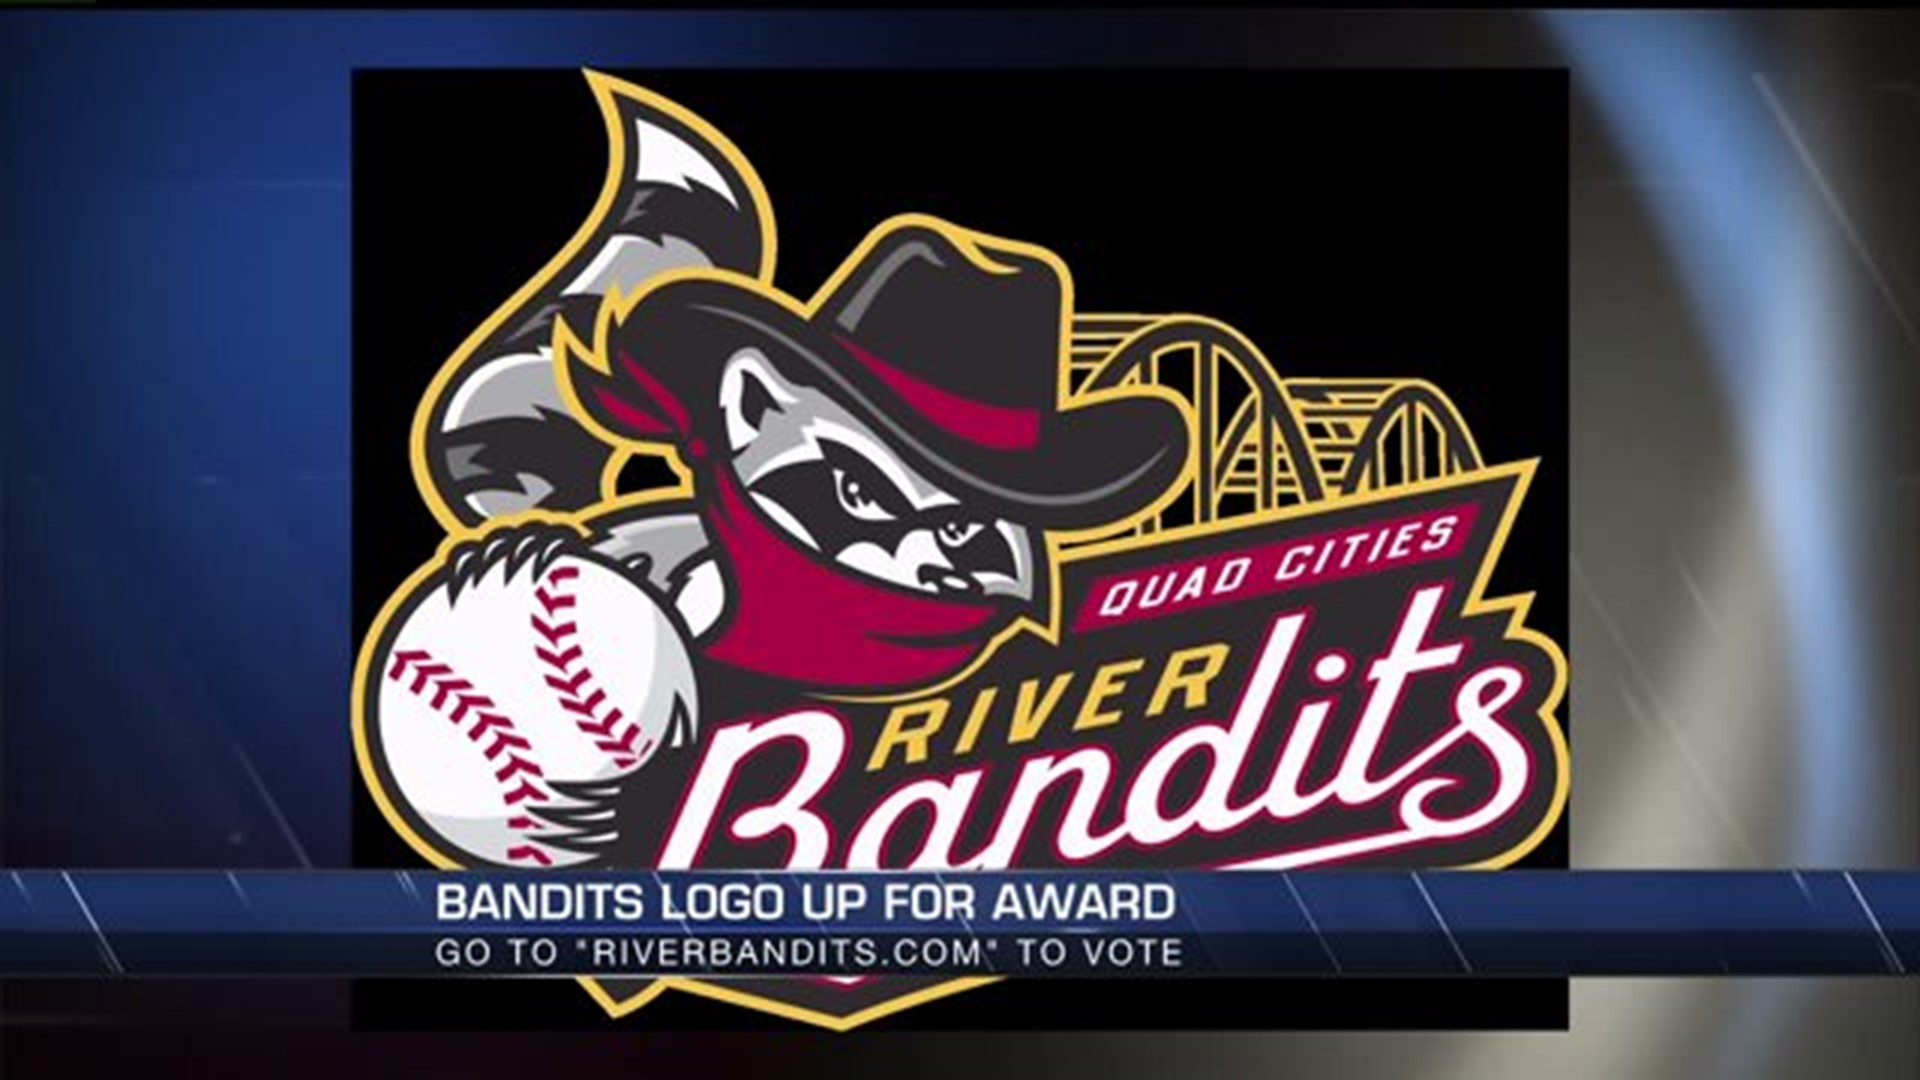 Bandits logo up for award